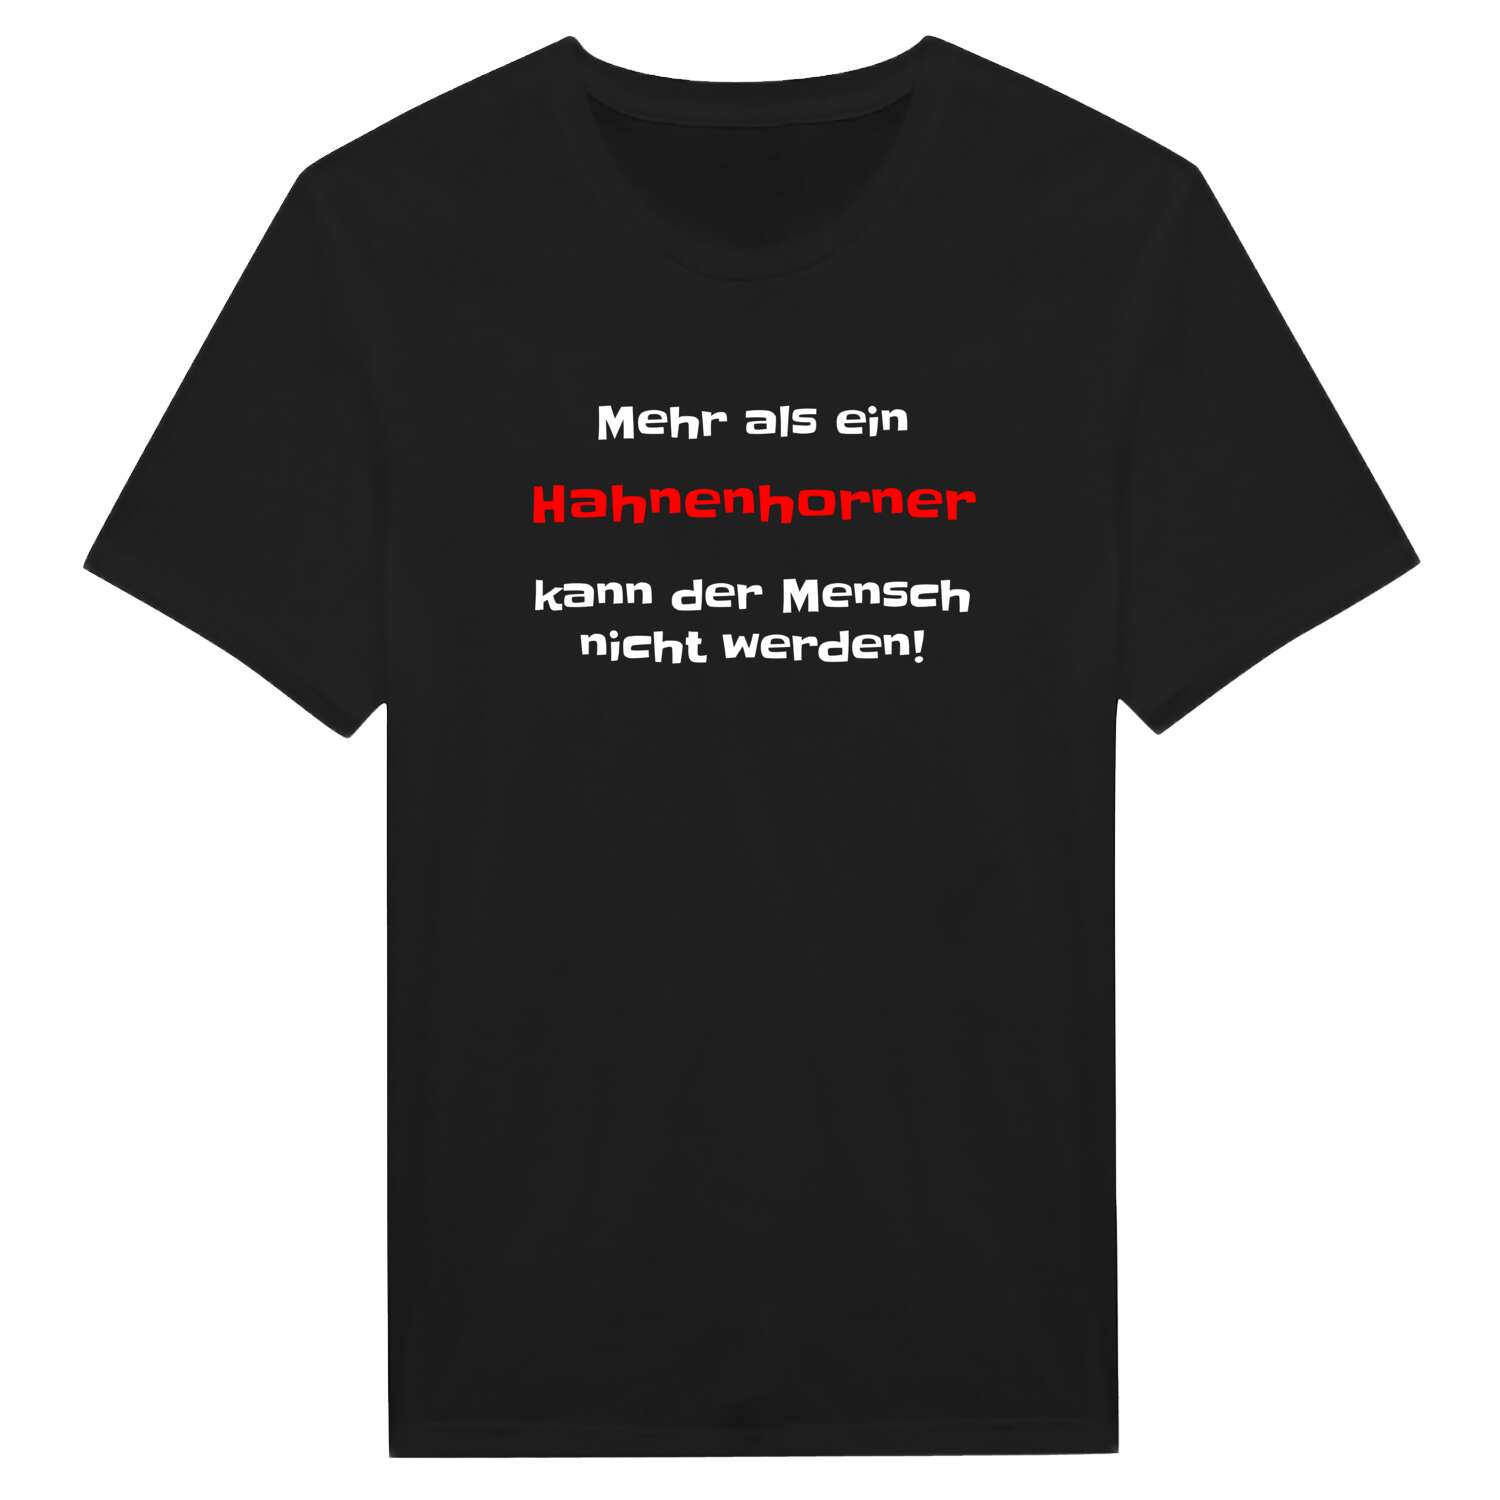 Hahnenhorn T-Shirt »Mehr als ein«